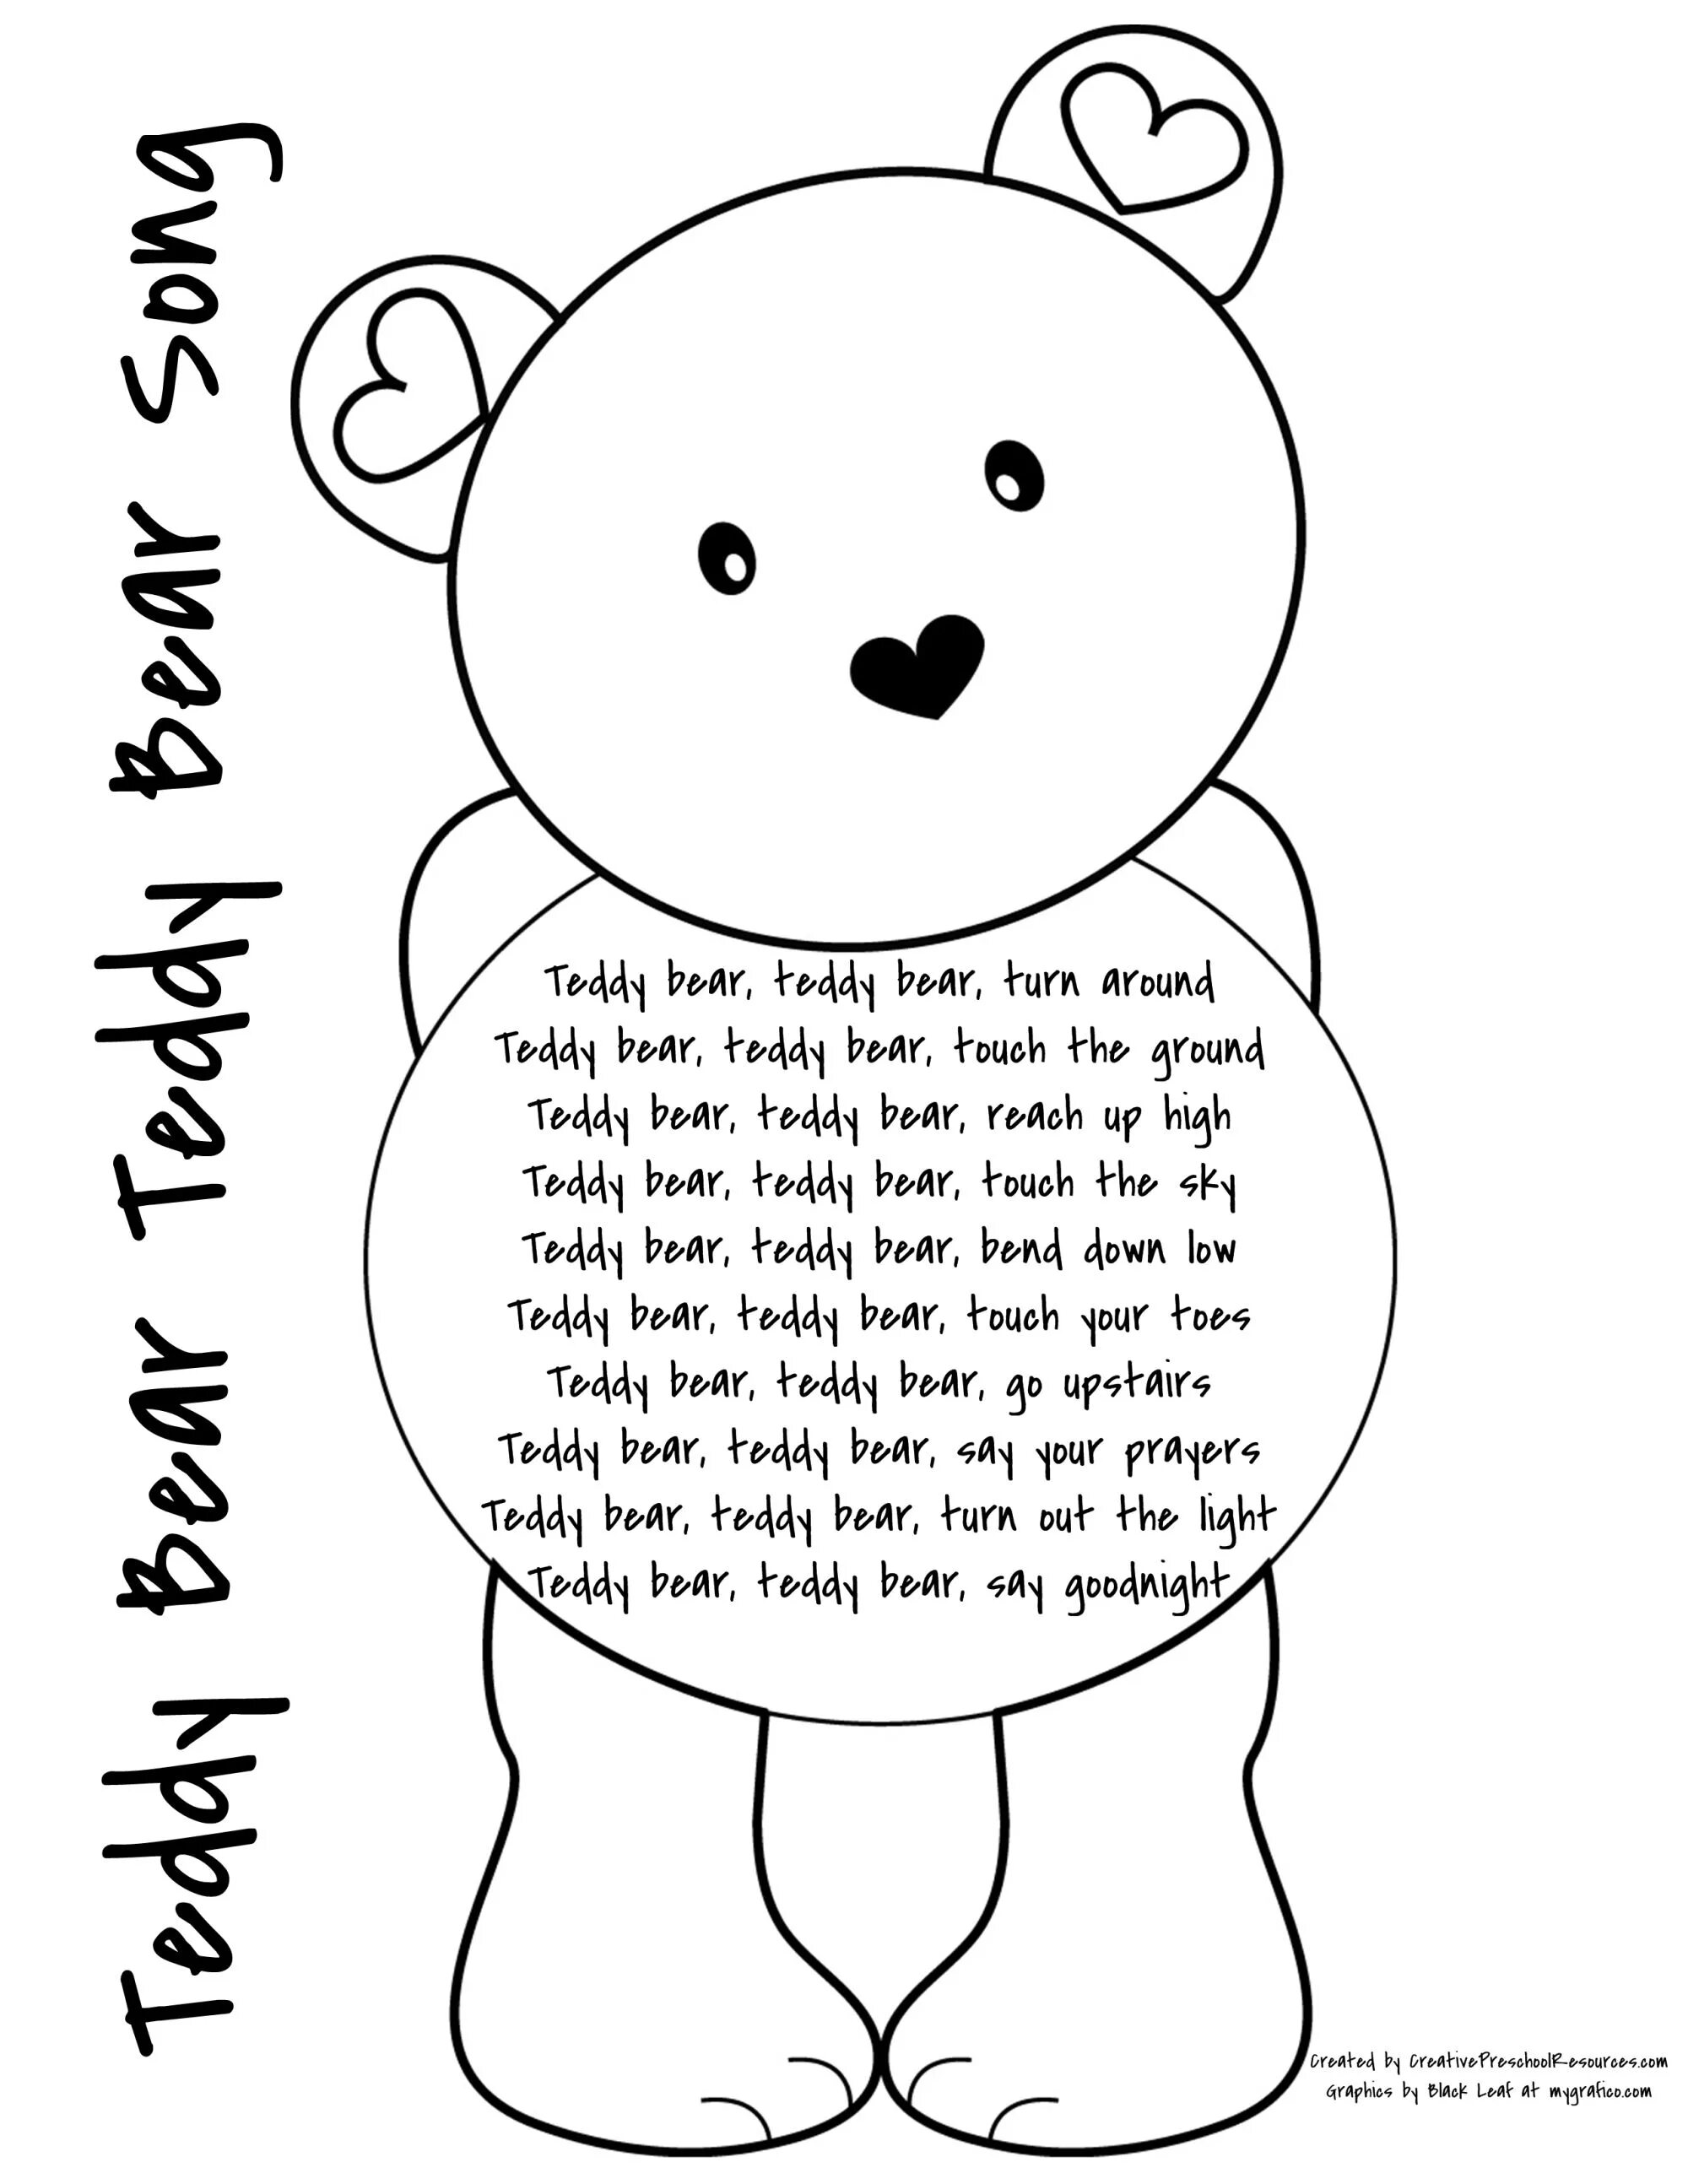 My Teddy Bear Worksheet. Раскраска Teddy Bear turn around. Bear раскраска на английском. Стихотворение Teddy Bear.